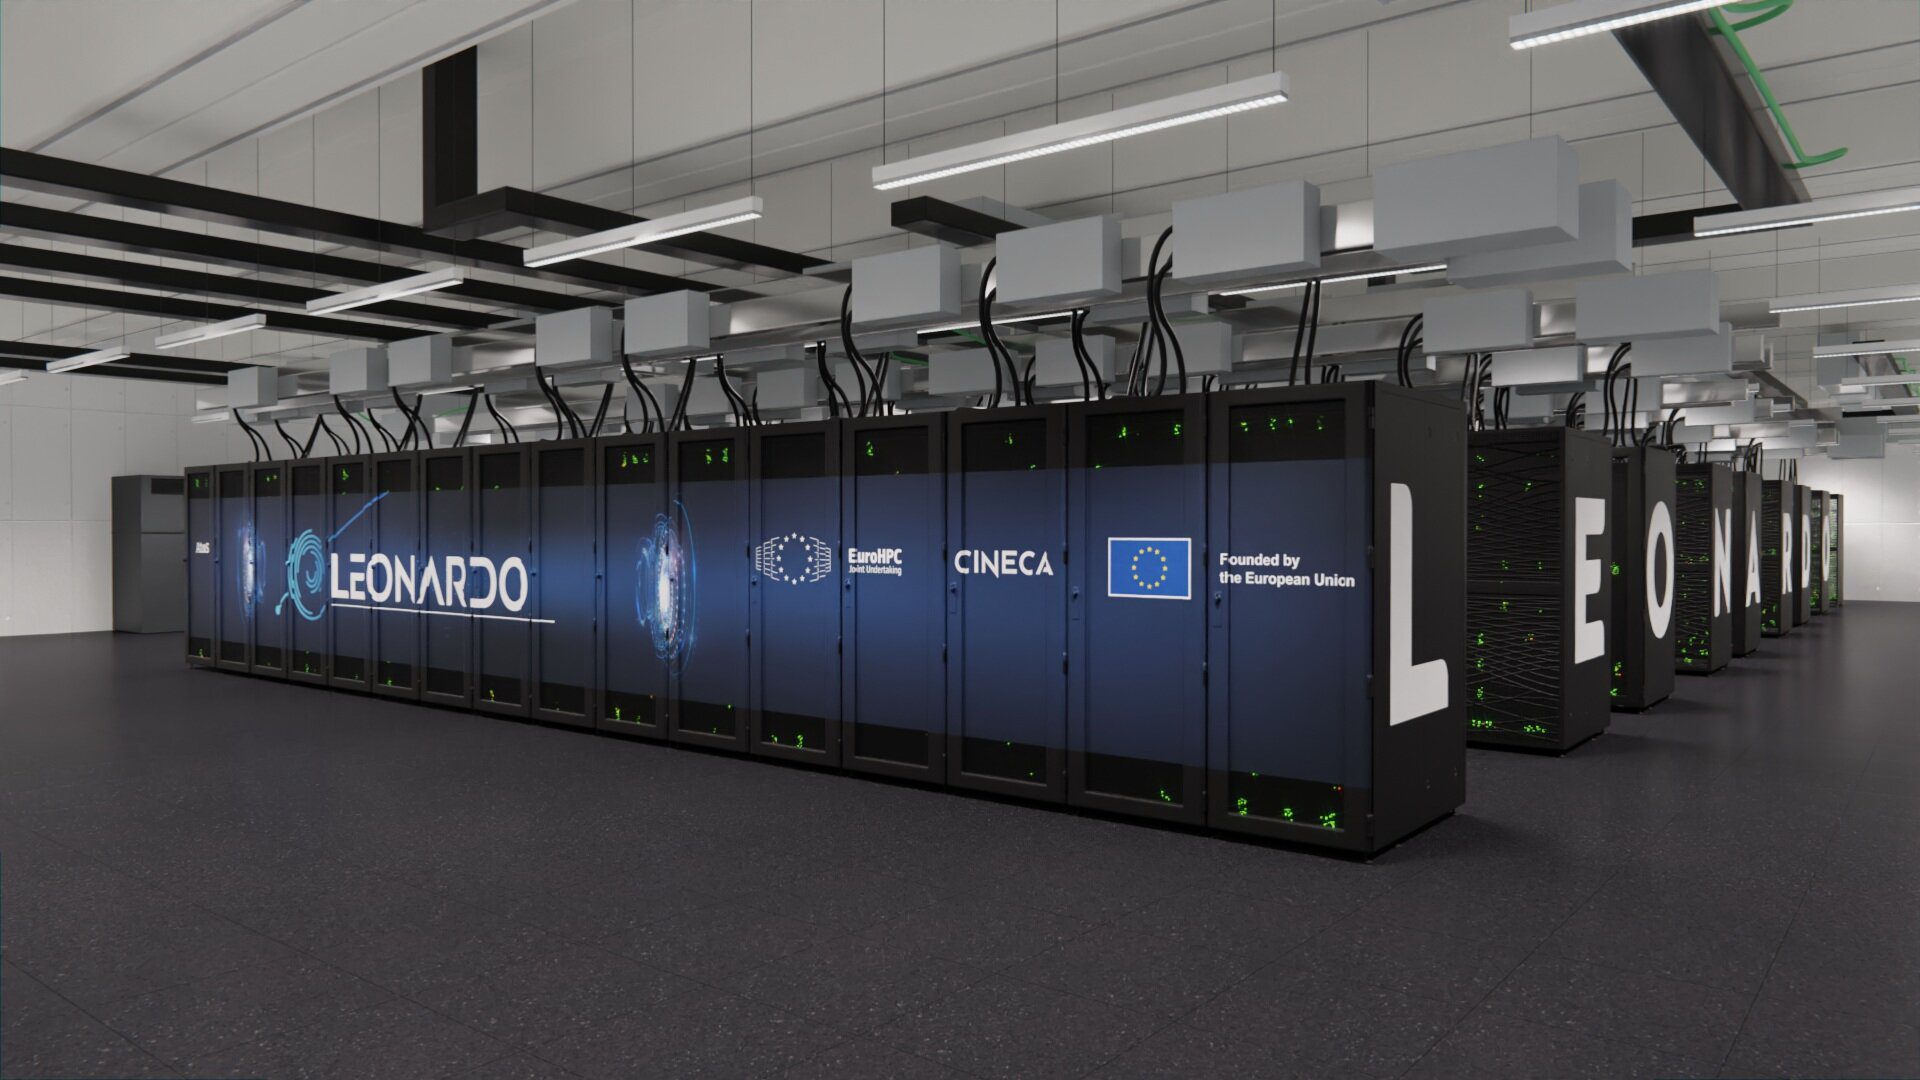 Italy's Euro Supercomputer Leonardo